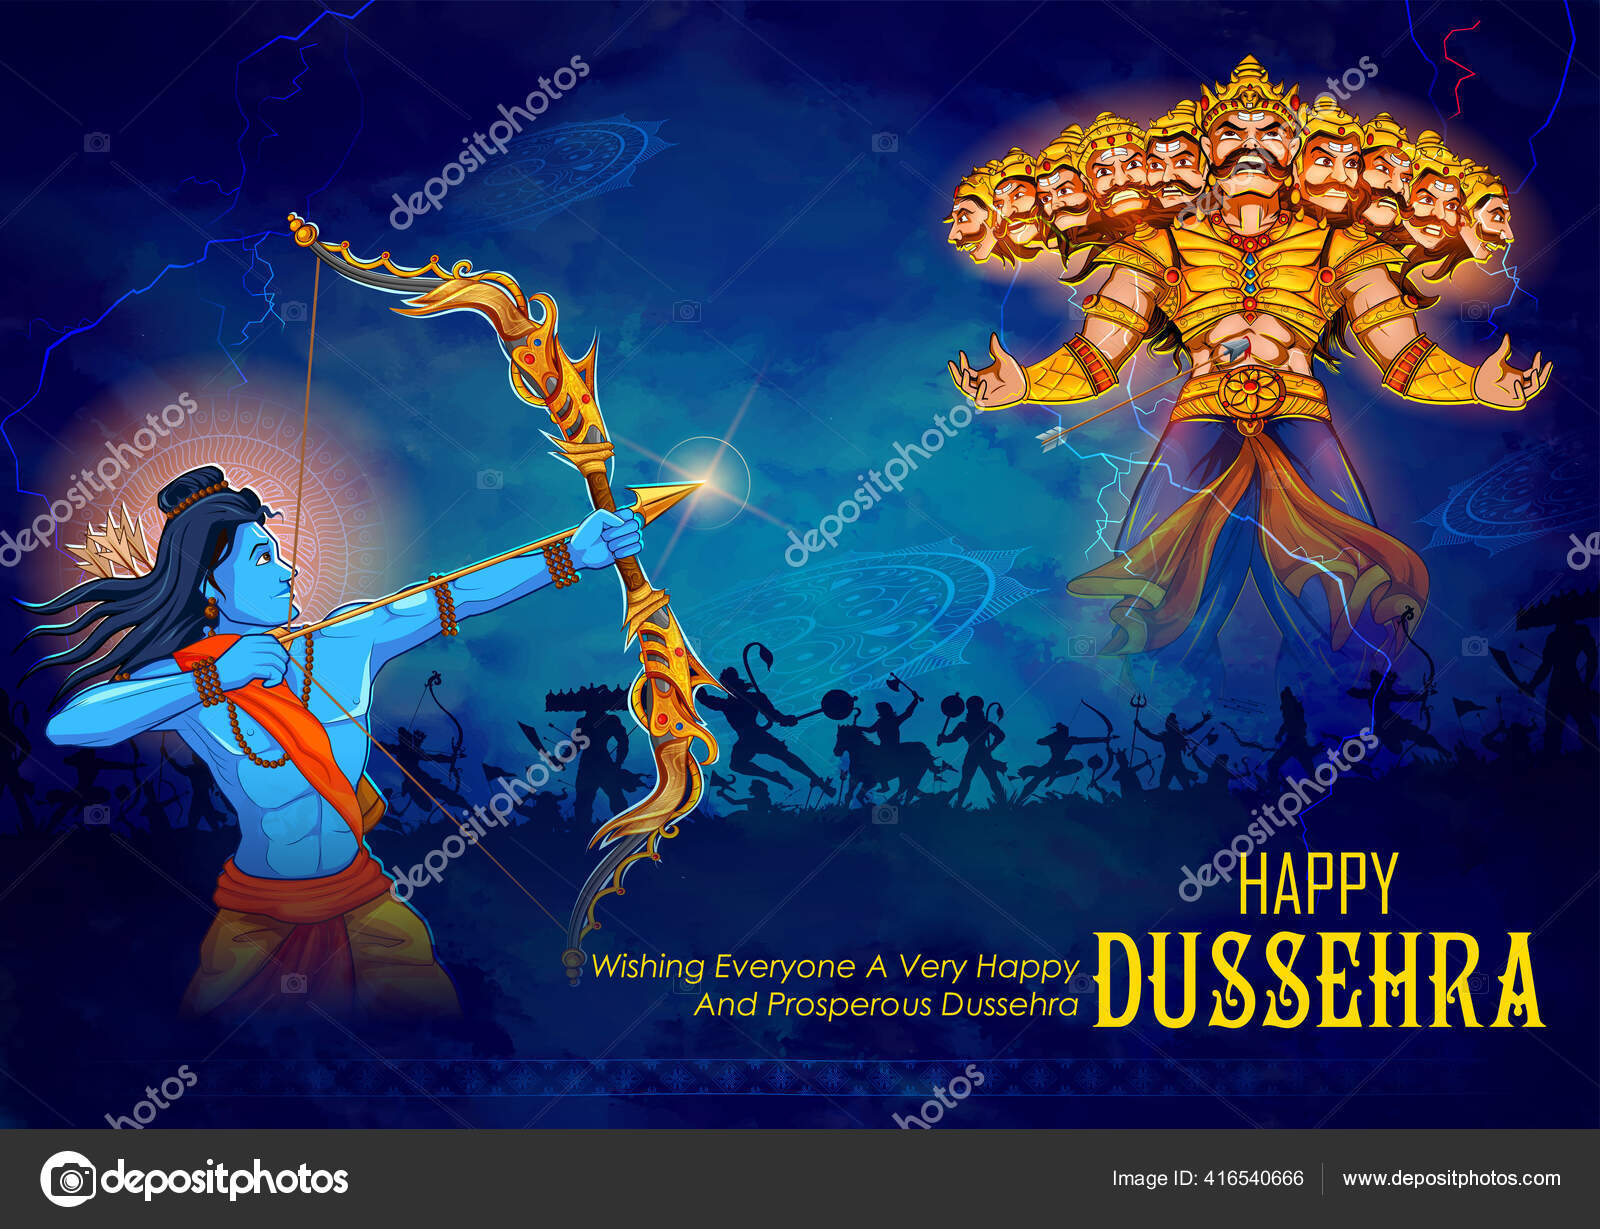 Happy dussehra Vector Art Stock Images | Depositphotos